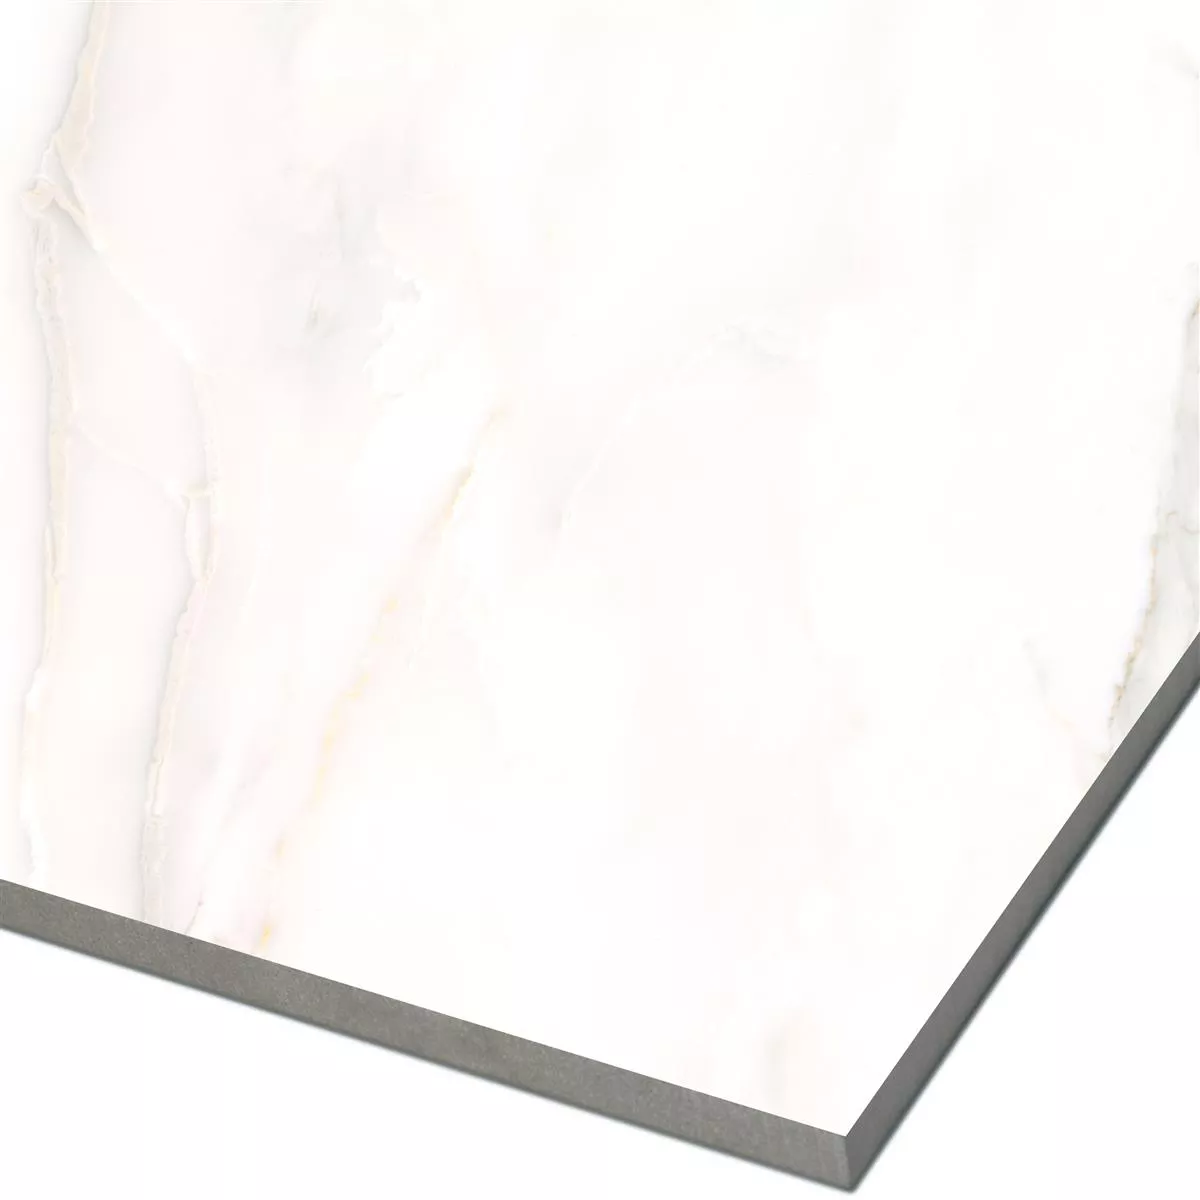 Πλακάκια Δαπέδου Rice Μαρμάρινη Όψη Calacatta Αμεμπτος 78x78cm